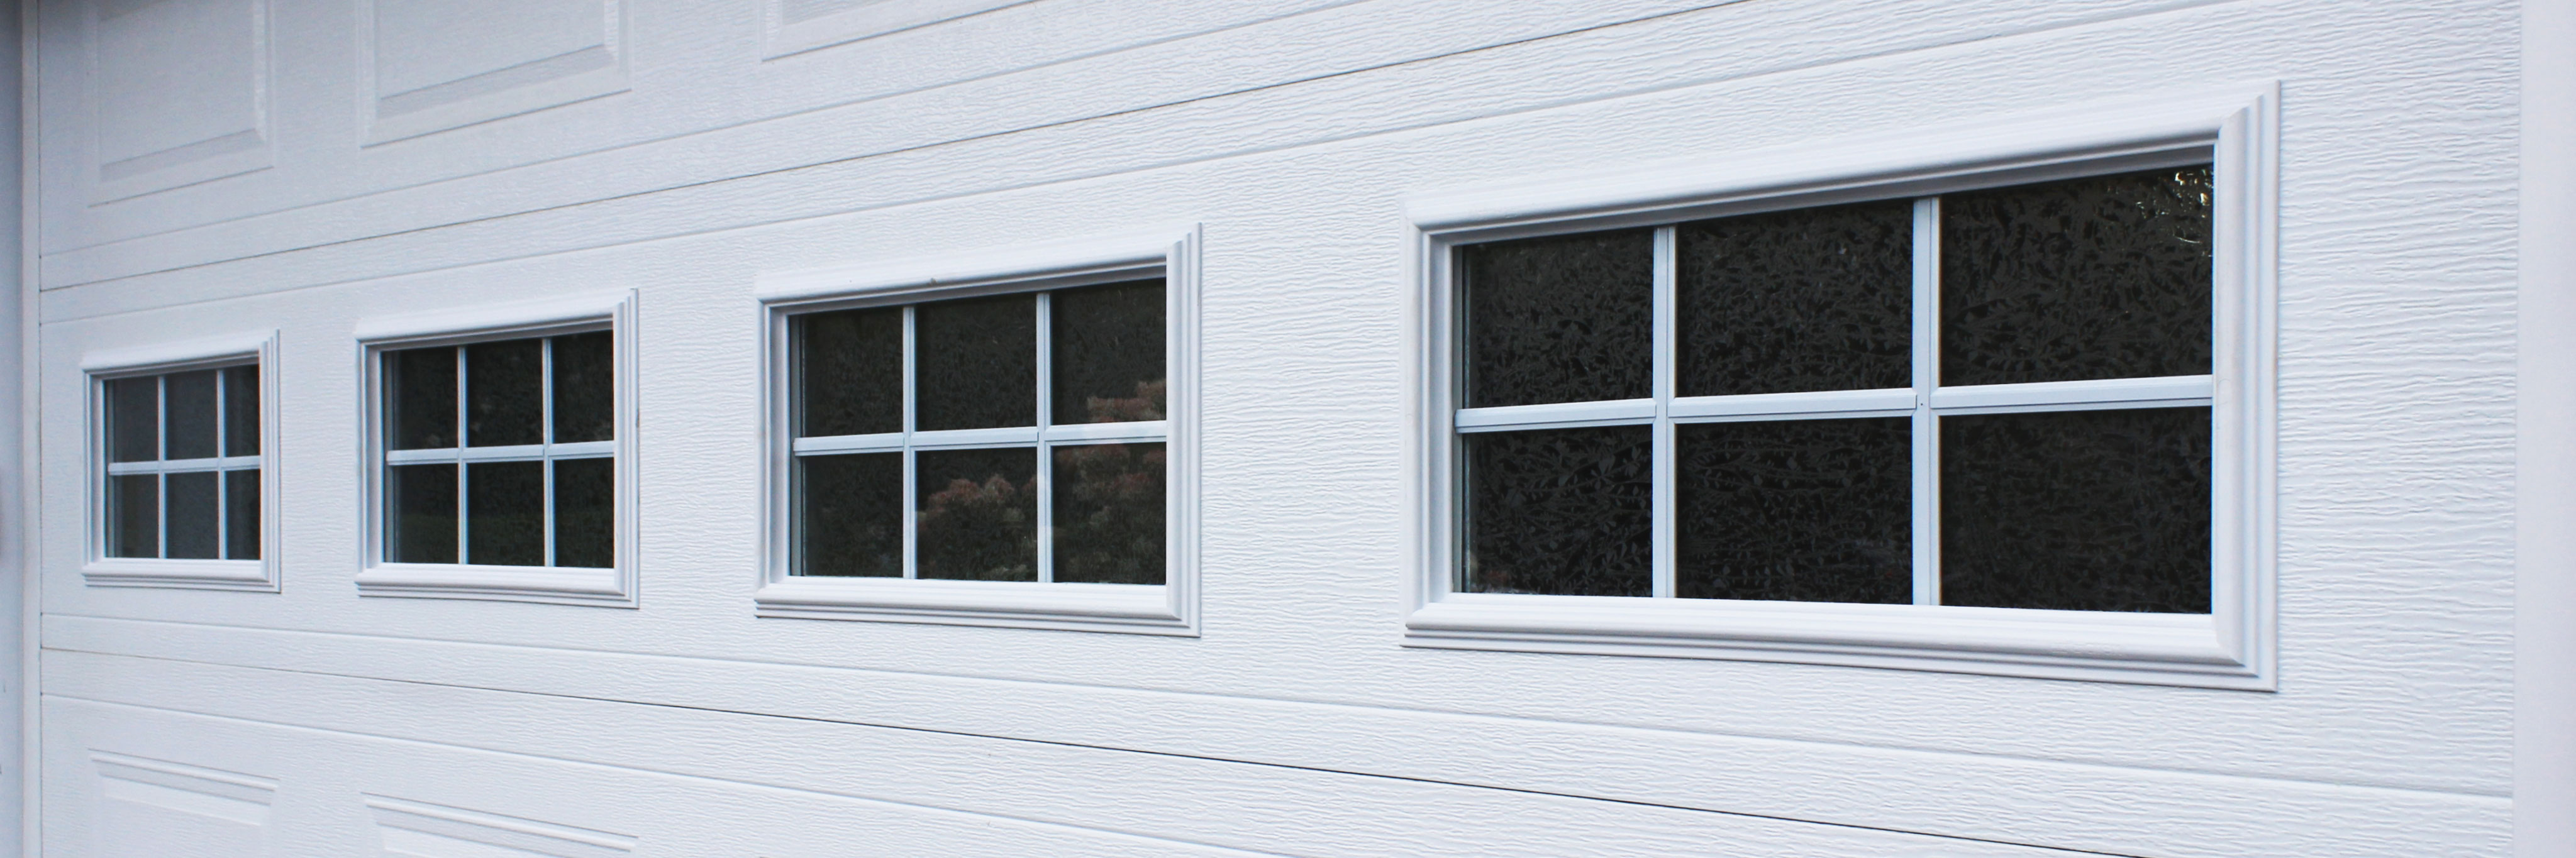 Thermal Windows To Your Garage Door, How To Remove Clopay Garage Door Window Inserts